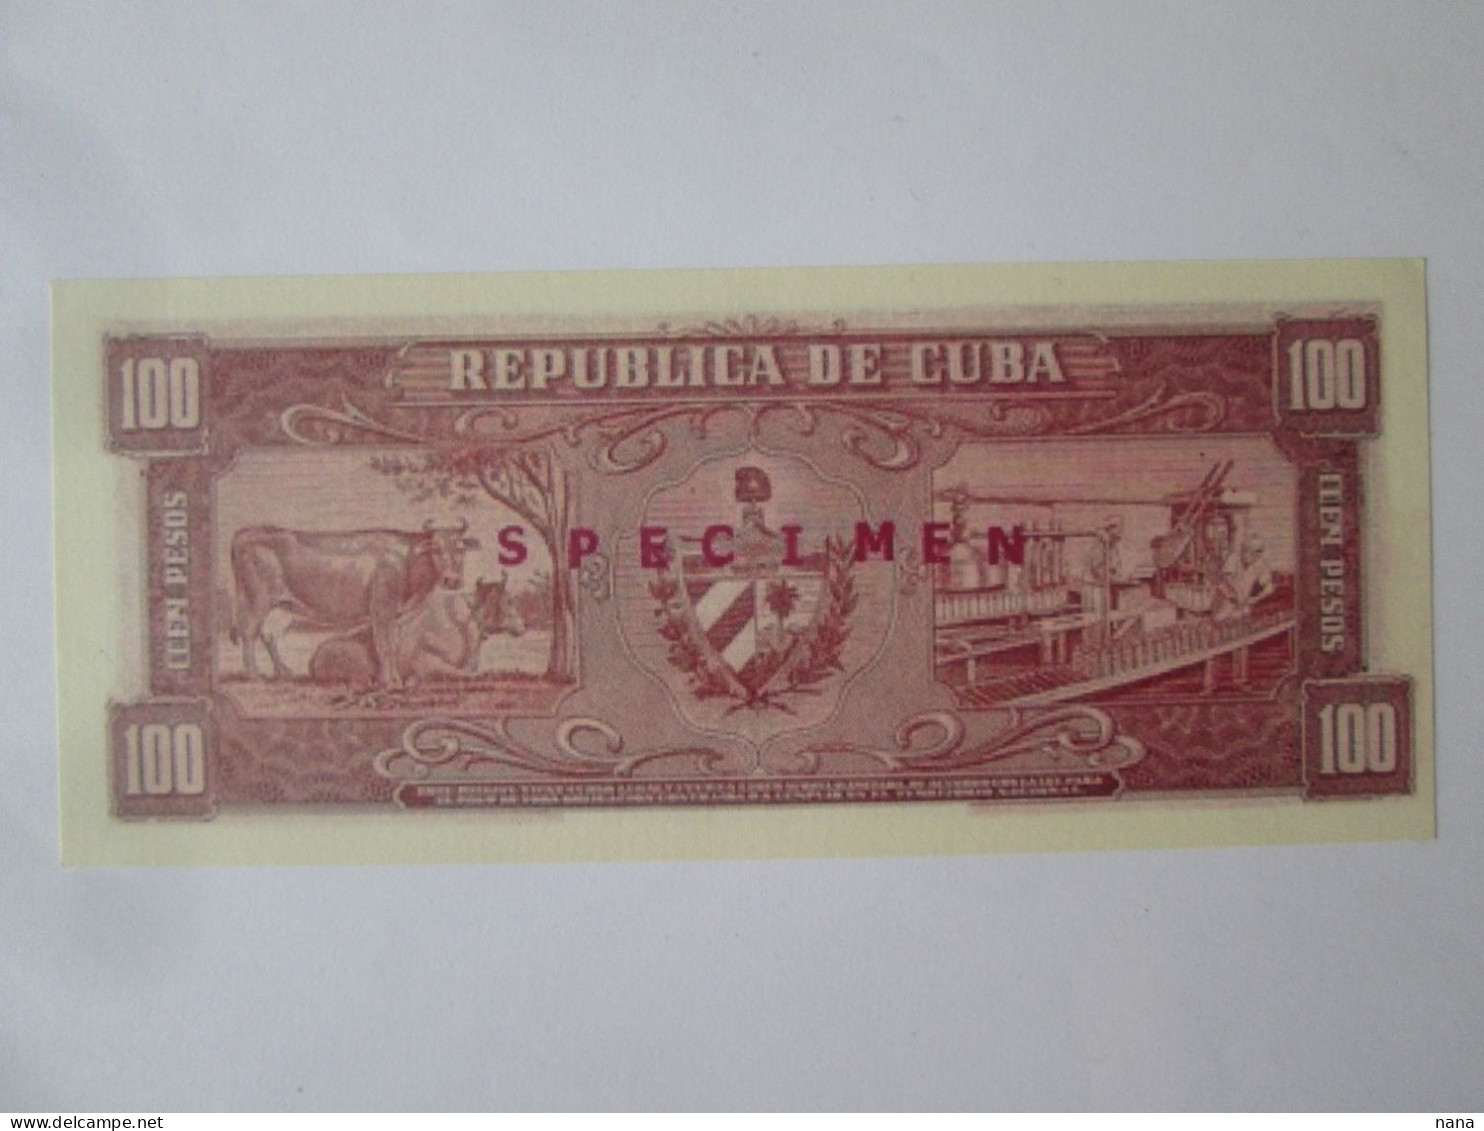 Cuba 100 Pesos Fantaisie BilletSpecimen Fidel Castro Et Che Guevara/Specimen Fantasy Banknote Fidel Castro & Che Guevara - Kuba